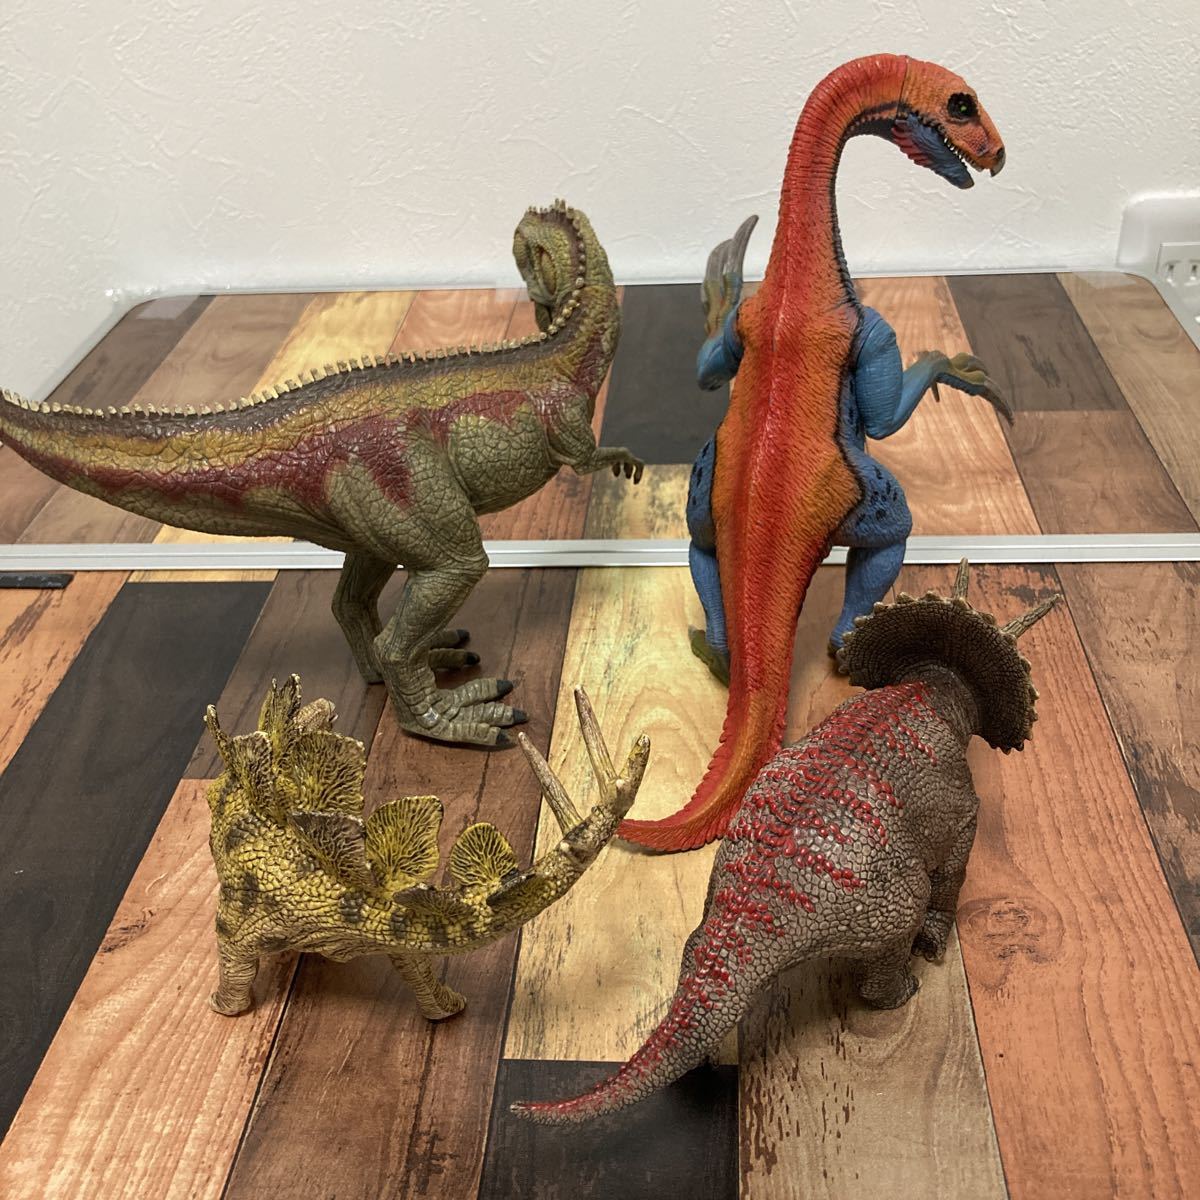 shulaihiSchleich динозавр фигурка 4 body комплект te Rige nosaurusgi gun tosauru -тактный likelatops стерео gosaurus